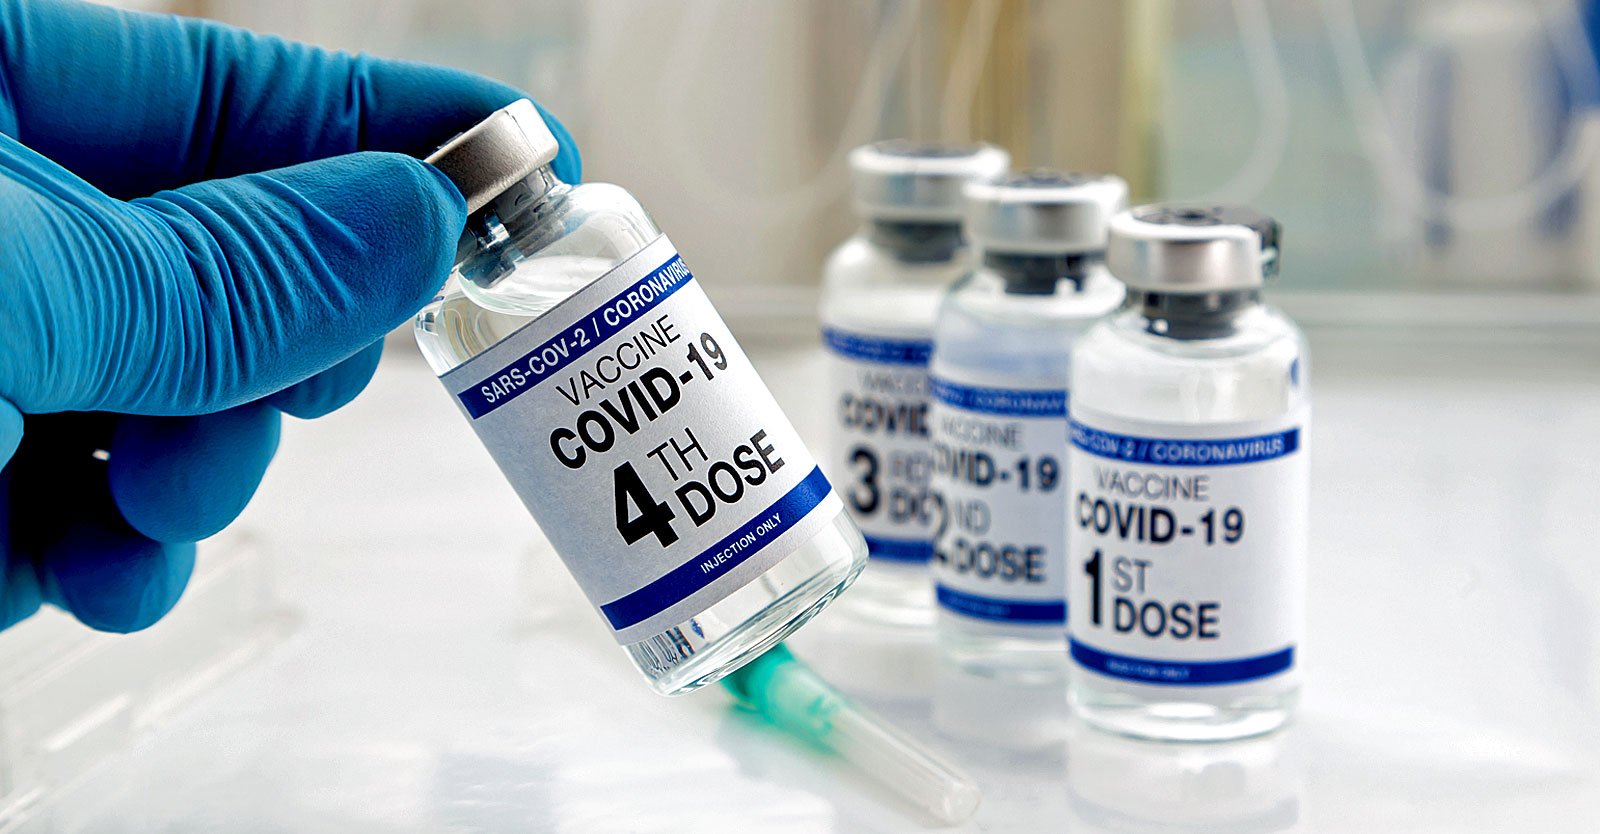 Simpleng malaswa: Inaprubahan ng FDA ang ikaapat na bakuna sa COVID para sa mga sanggol at batang wala pang 5 taong gulang